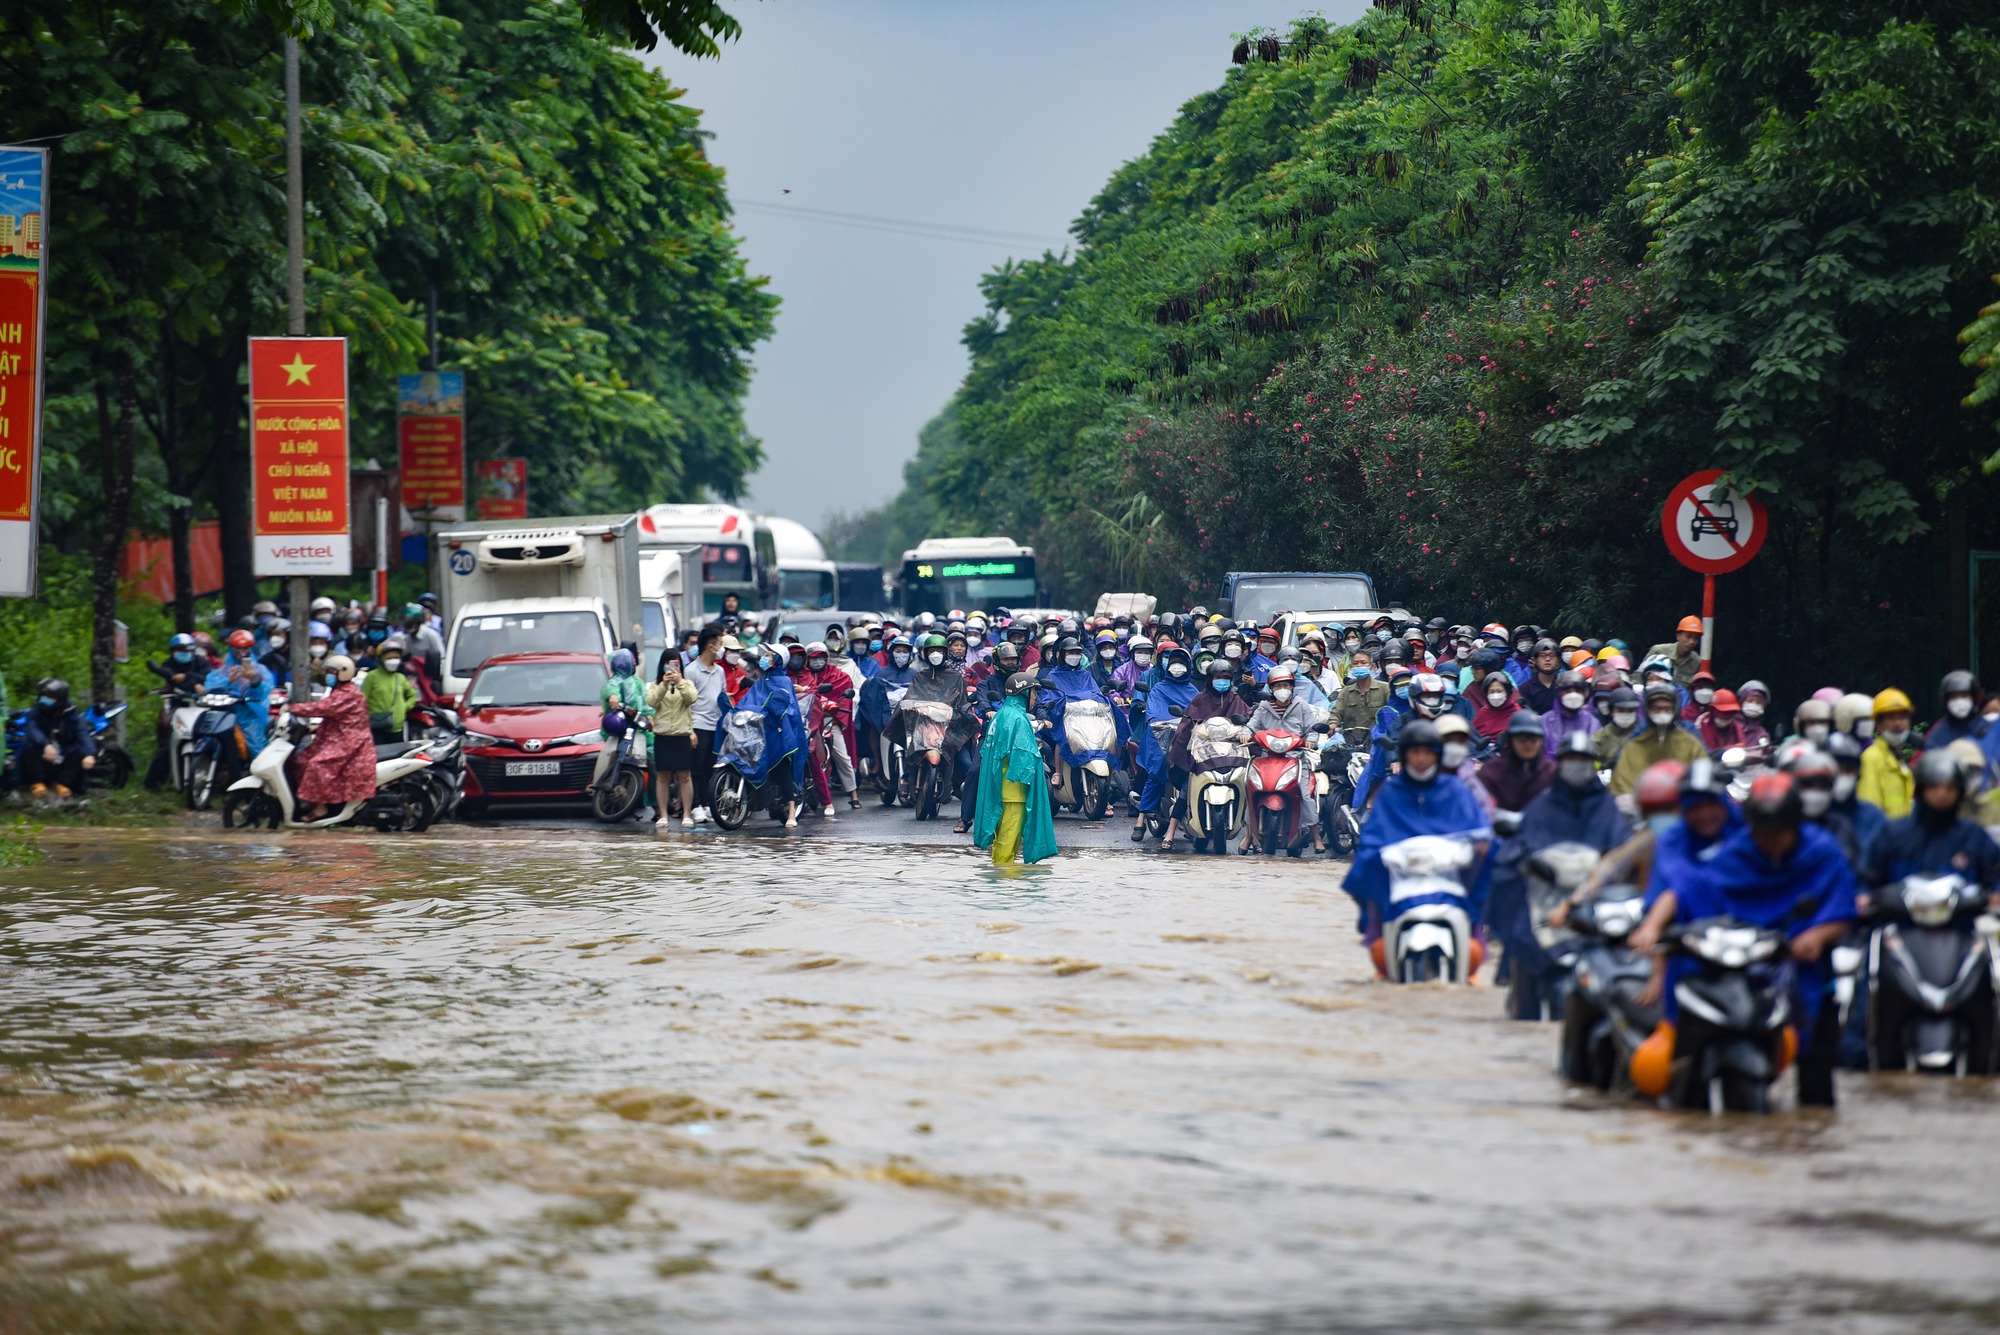 Đường gom đại lộ Thăng Long chìm trong biển nước sau trận mưa lớn - Ảnh 9.